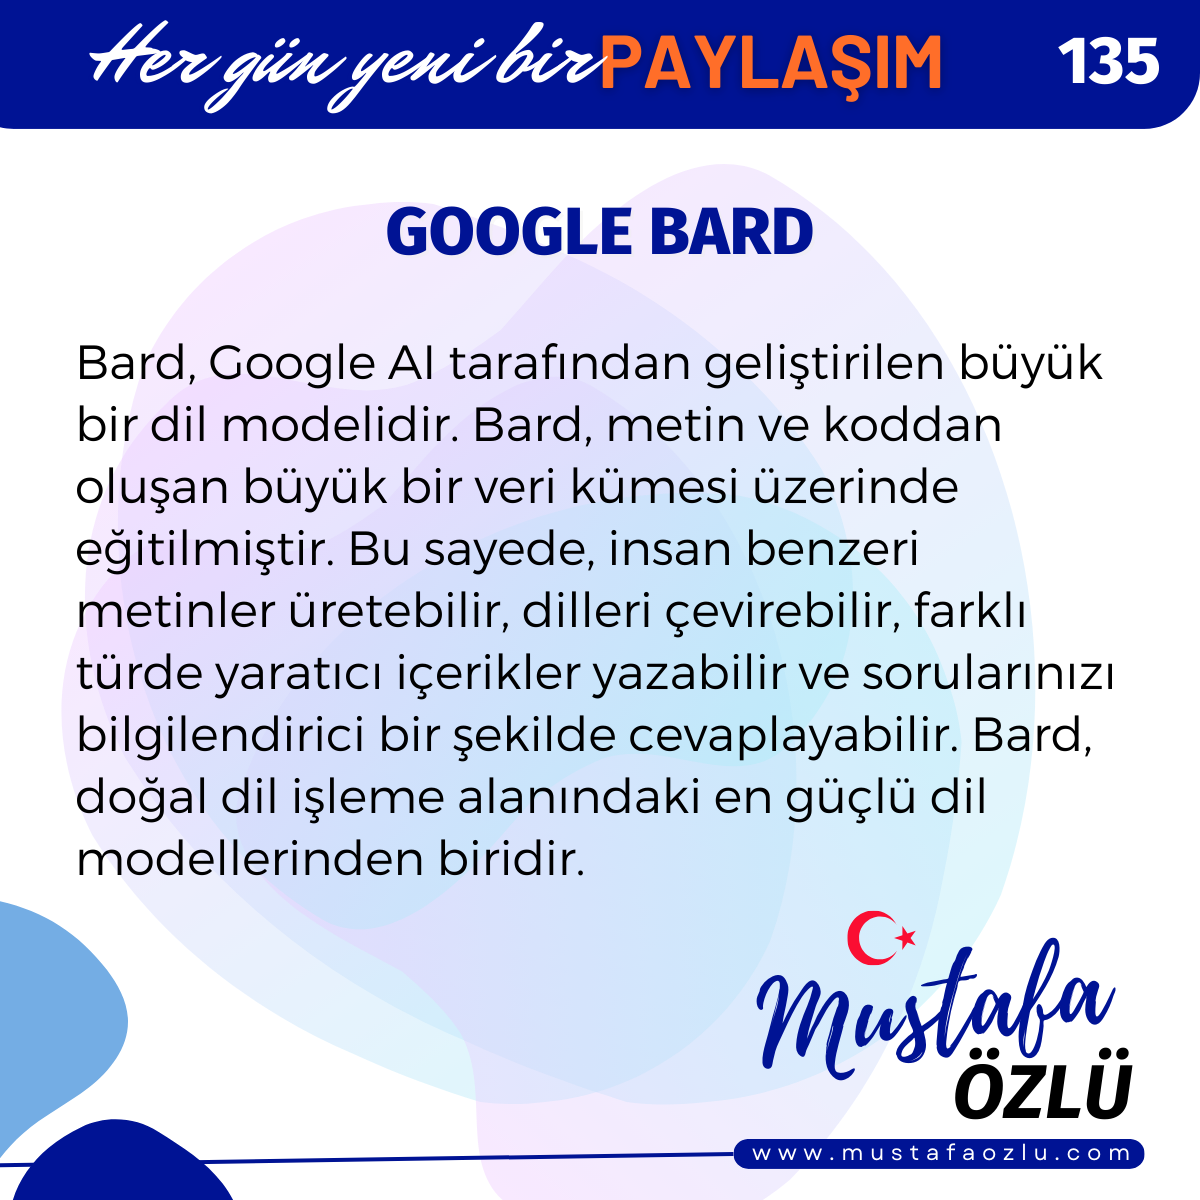 Google Bard - Mustafa ÖZLÜ